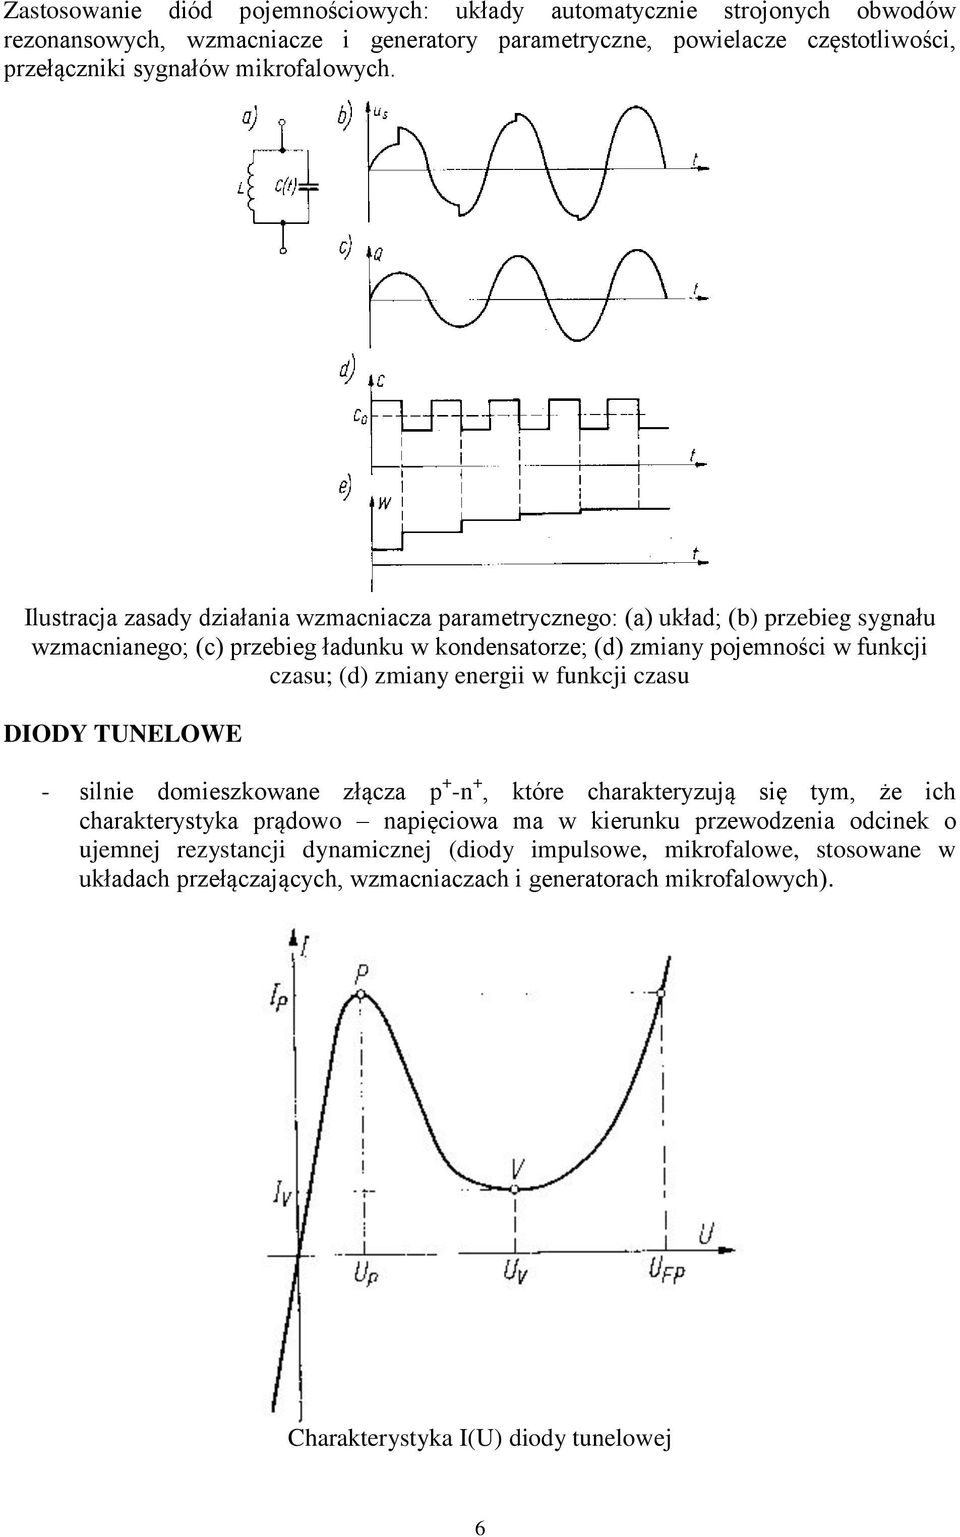 Ilustracja zasady działania wzmacniacza parametrycznego: (a) układ; (b) przebieg sygnału wzmacnianego; (c) przebieg ładunku w kondensatorze; (d) zmiany pojemności w funkcji czasu; (d)